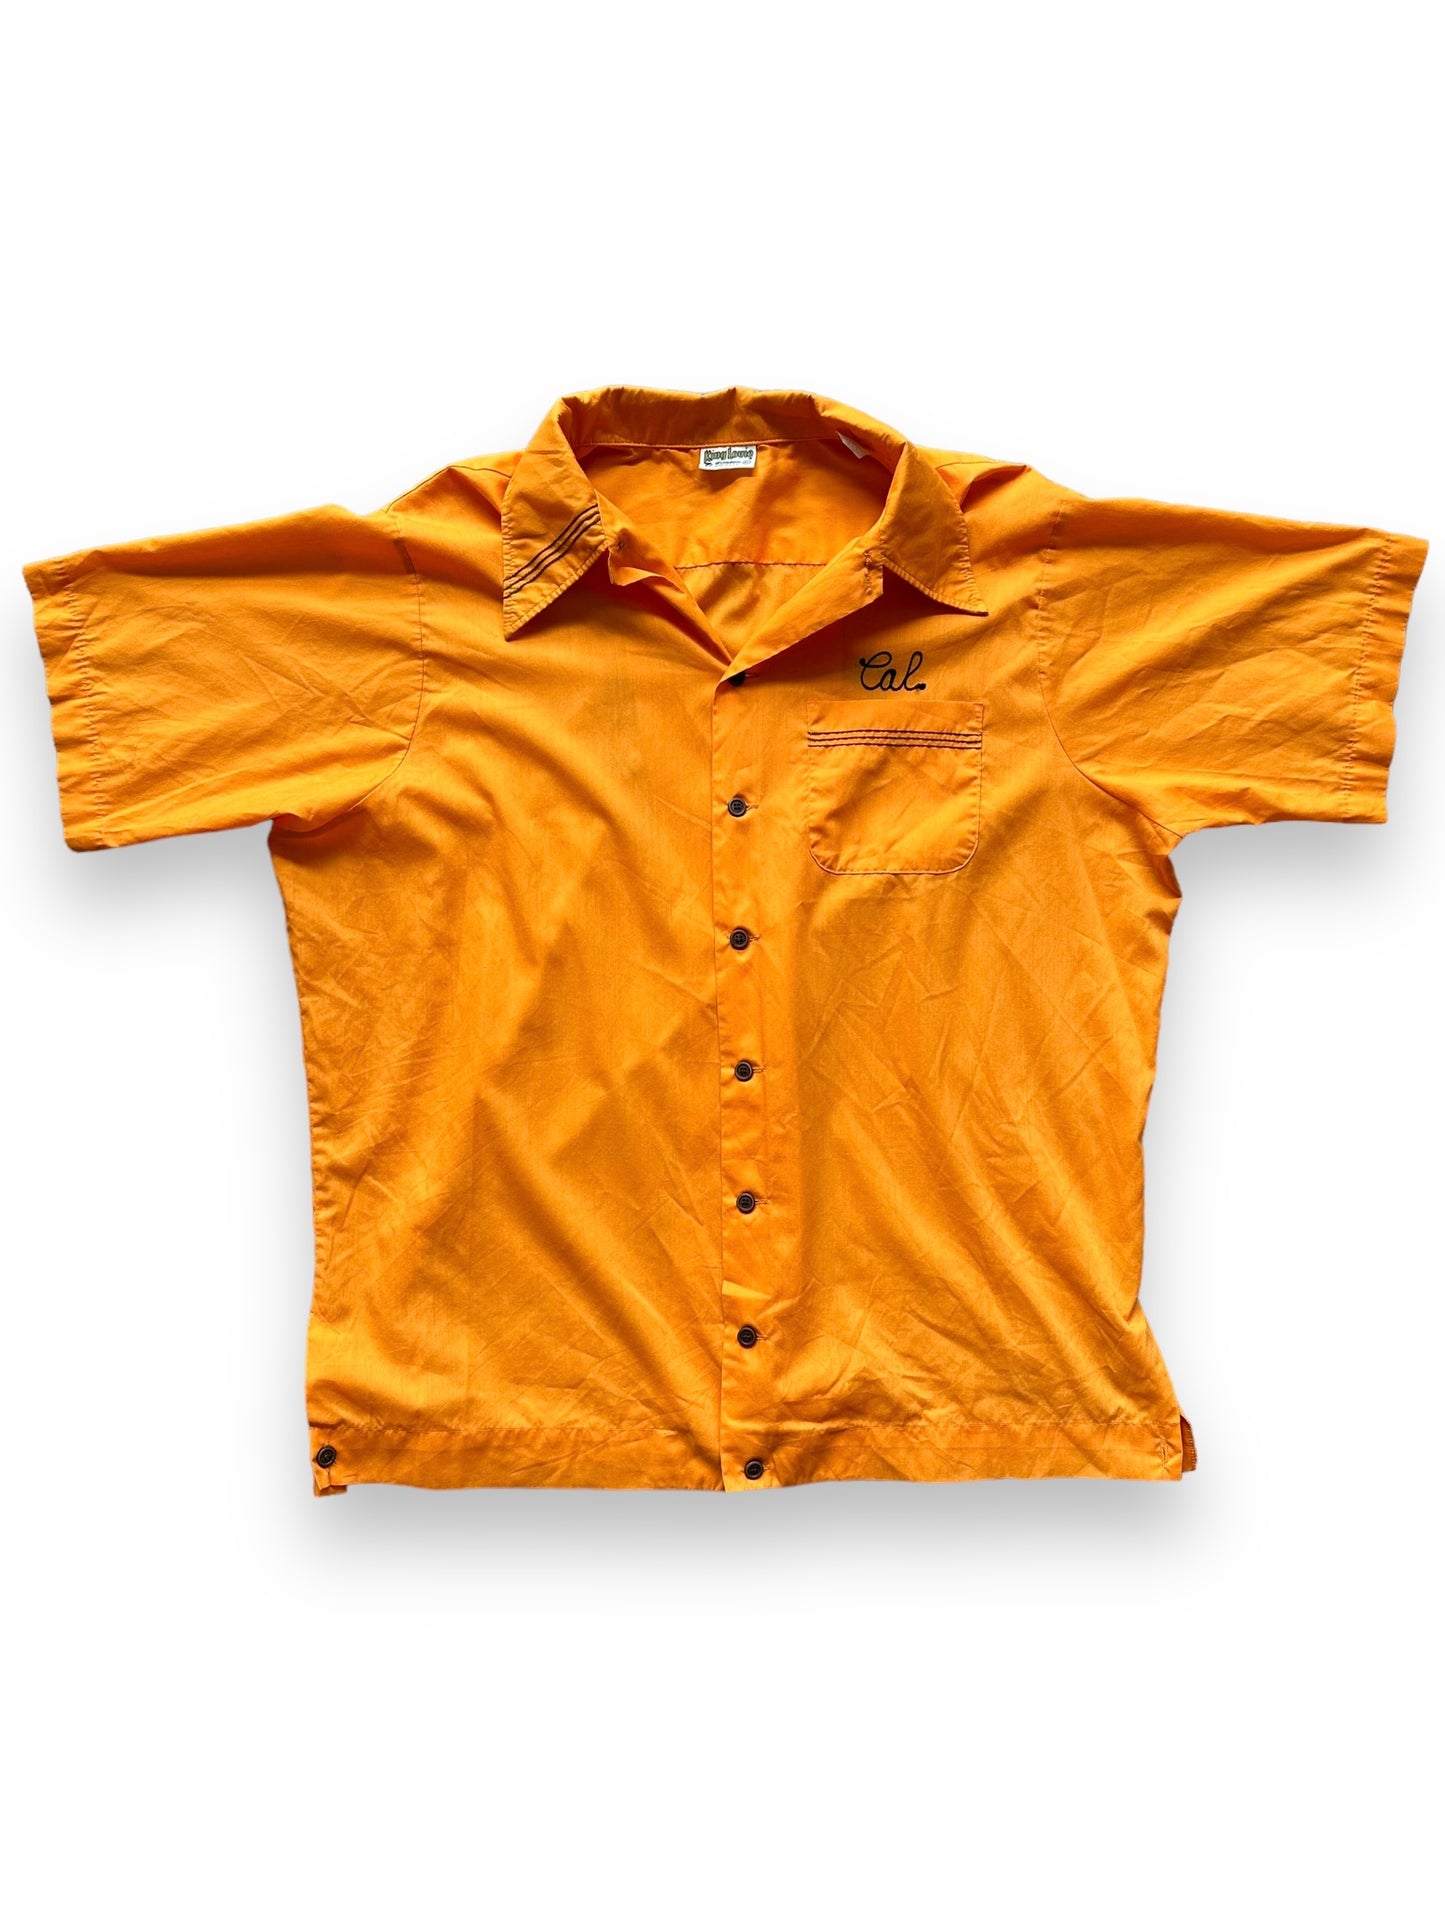 Front of Vintage "Starlite Pro Shop" Chainstitched Bowling Shirt SZ XL | Vintage Bowling Shirt Seattle | Barn Owl Vintage Seattle